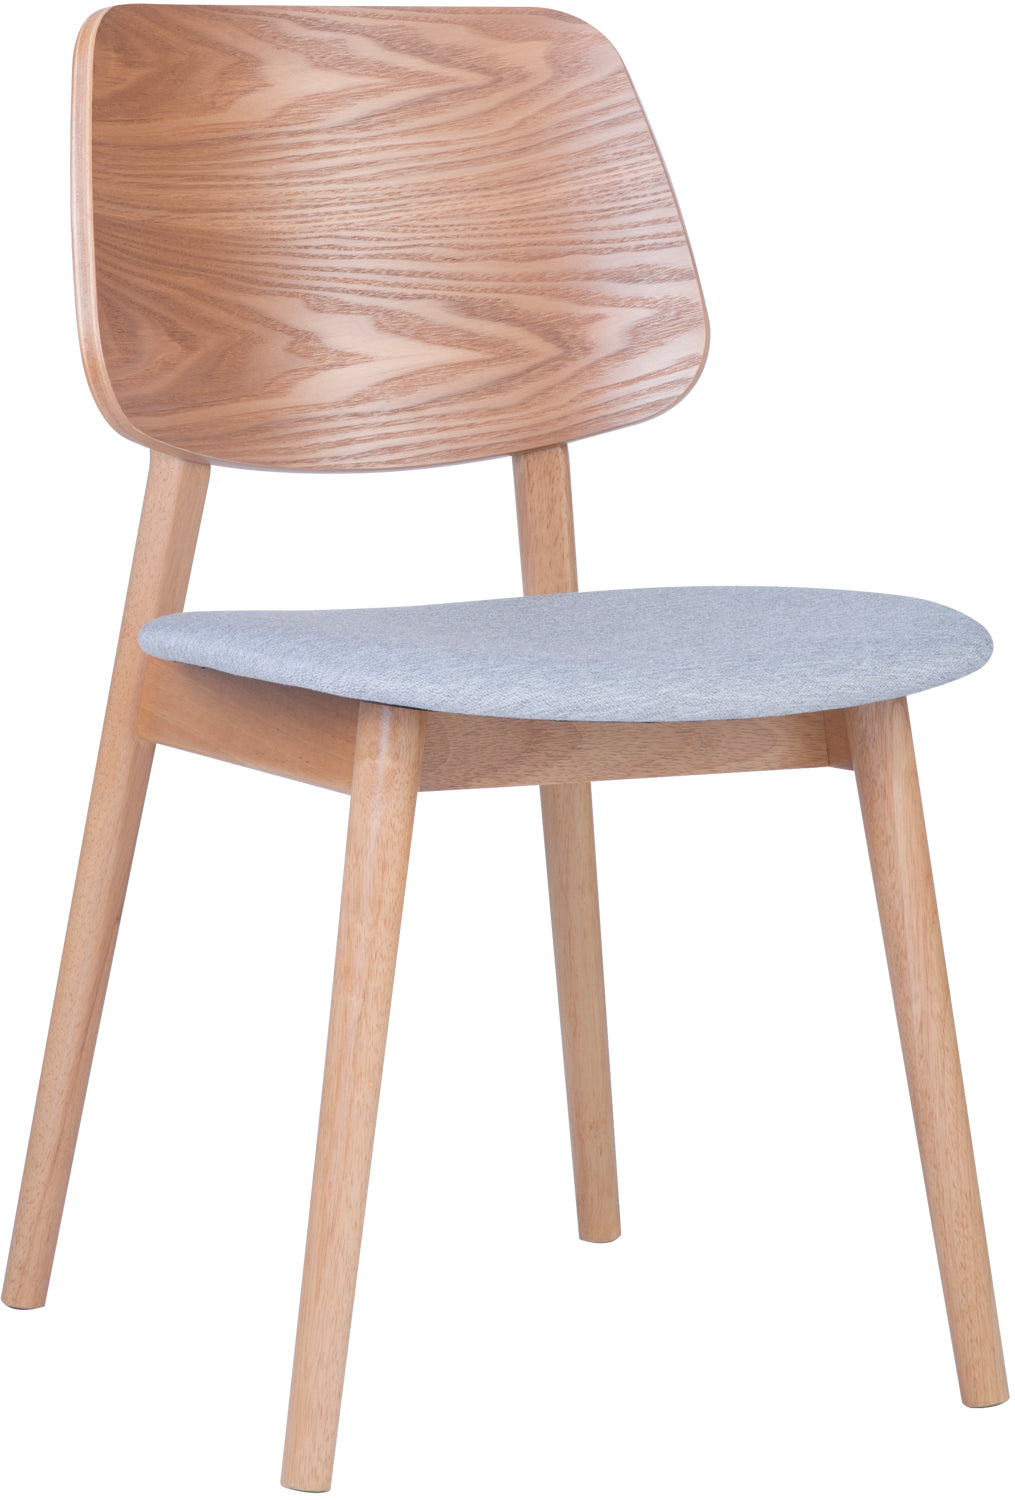 rustique monteil dining chair 餐椅, 自然木色 可选椅背 2件